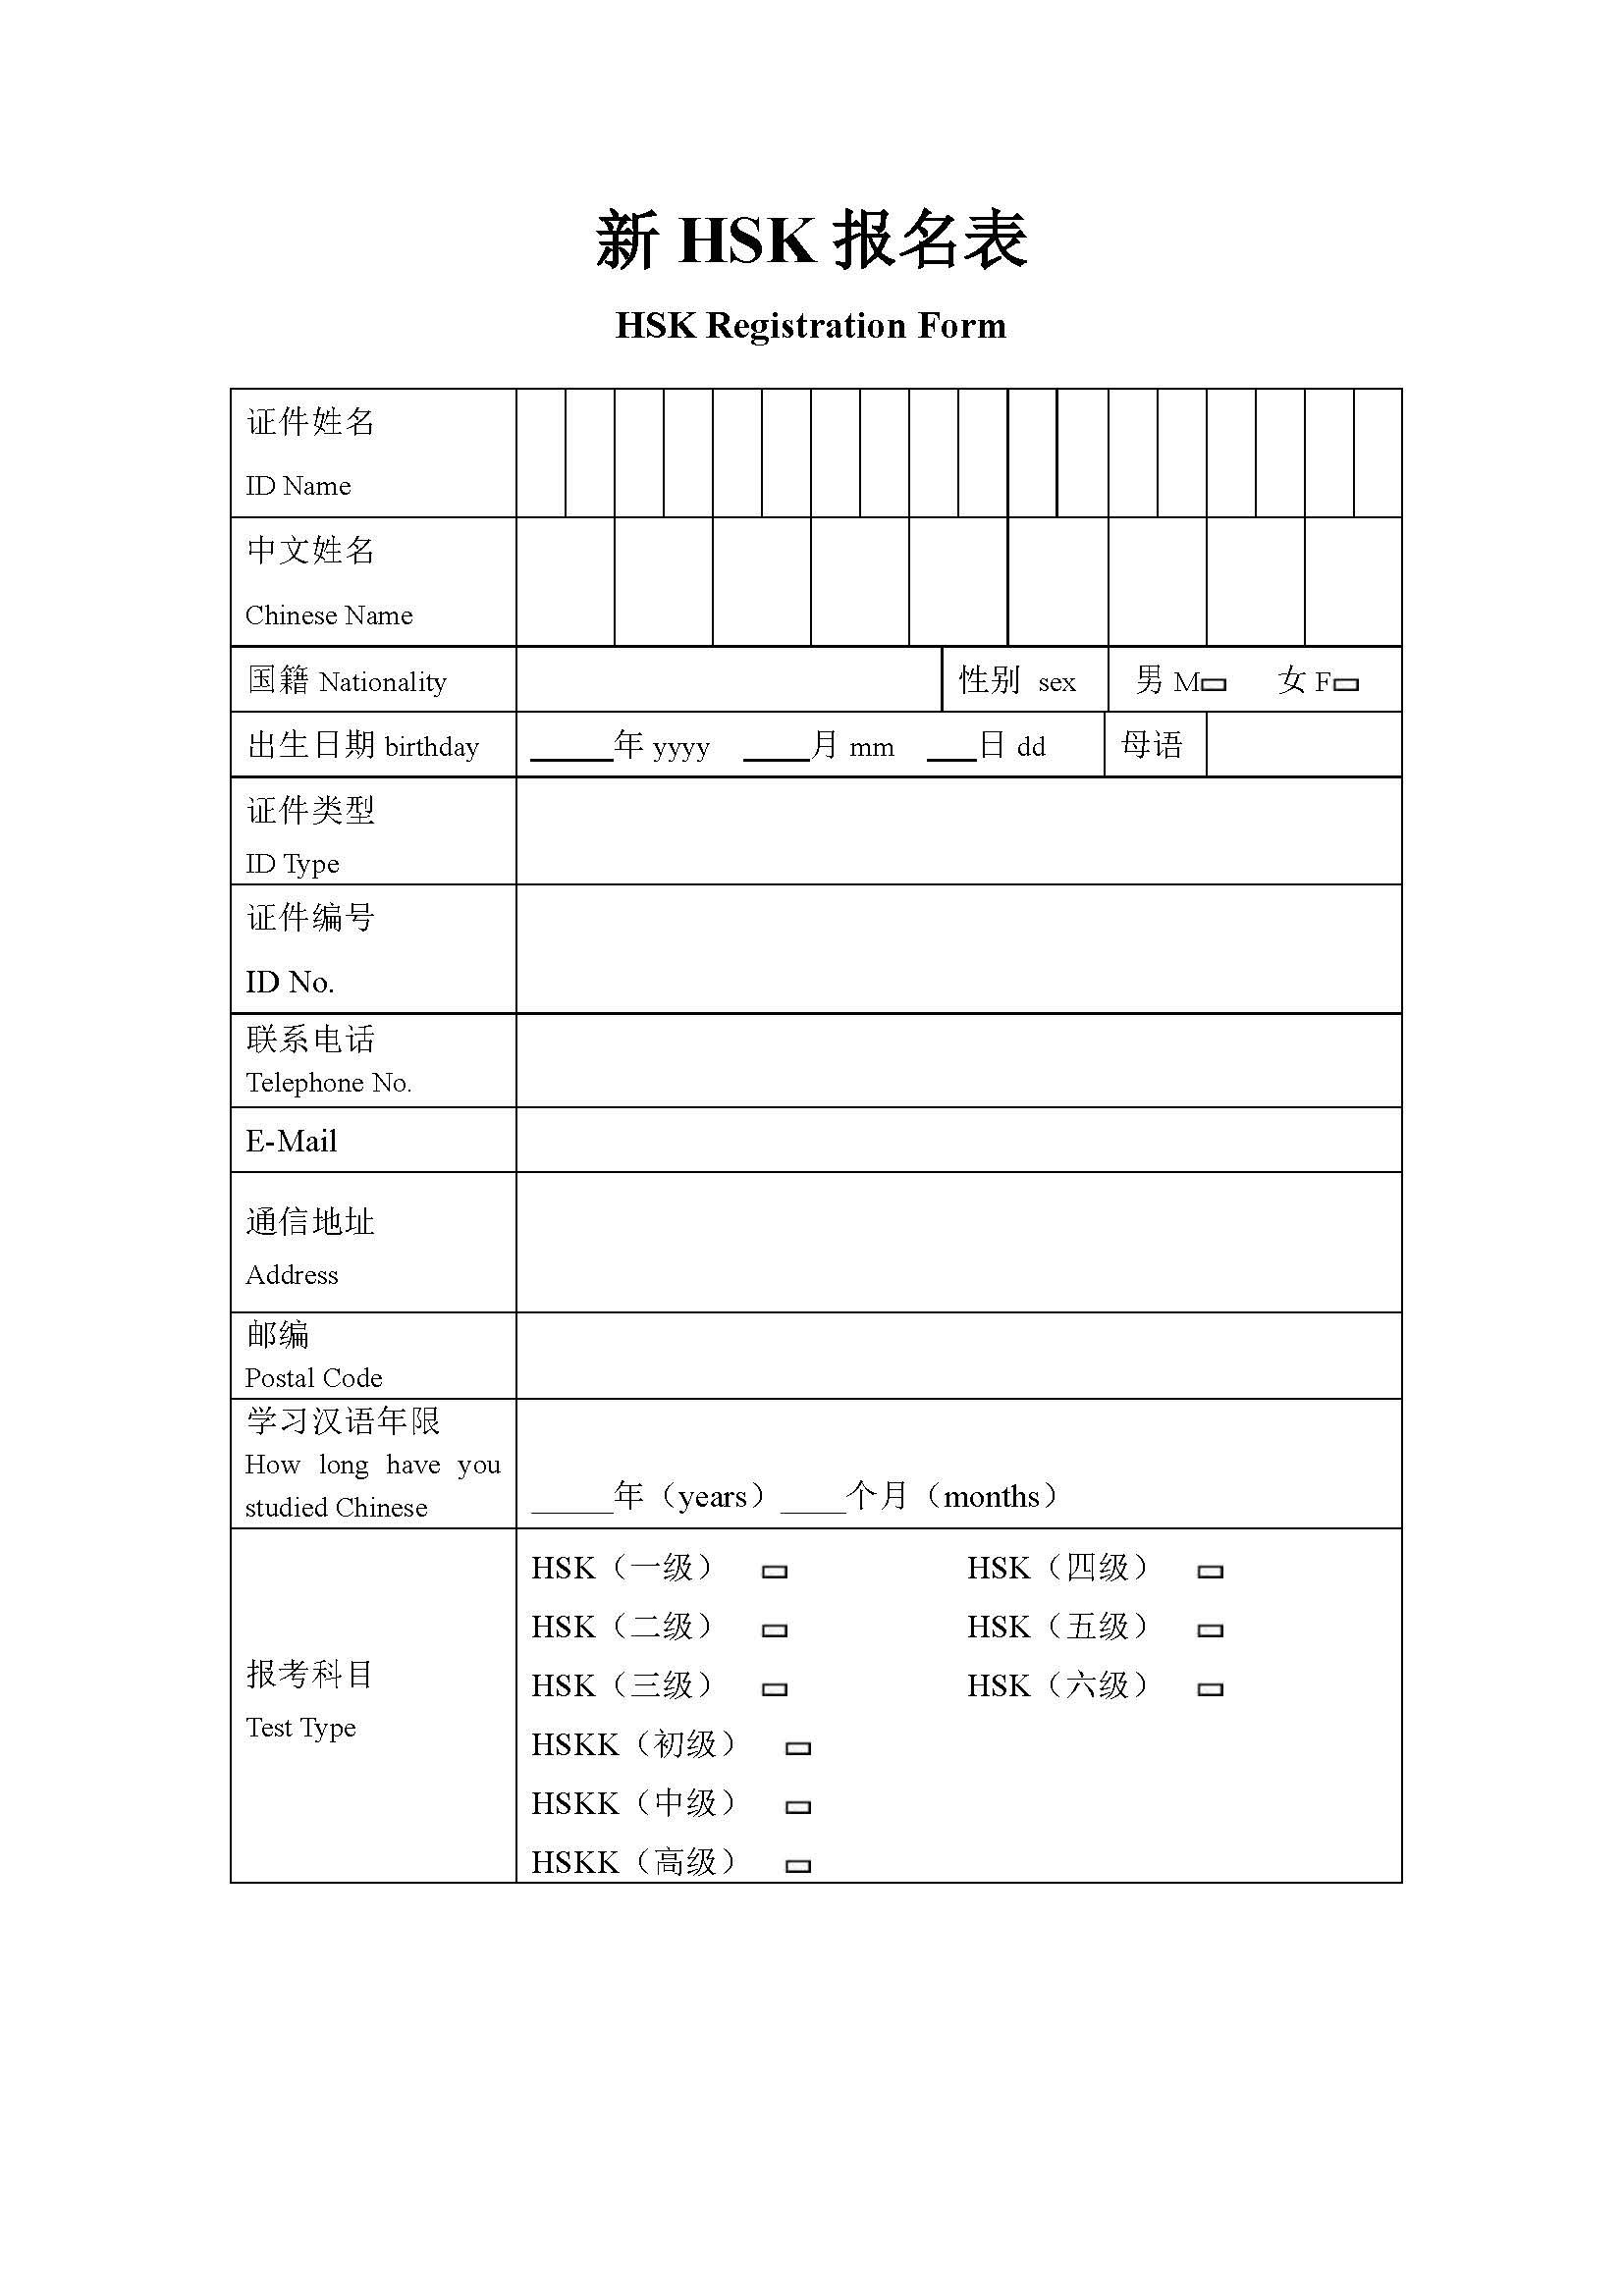 hsk exam registration form template